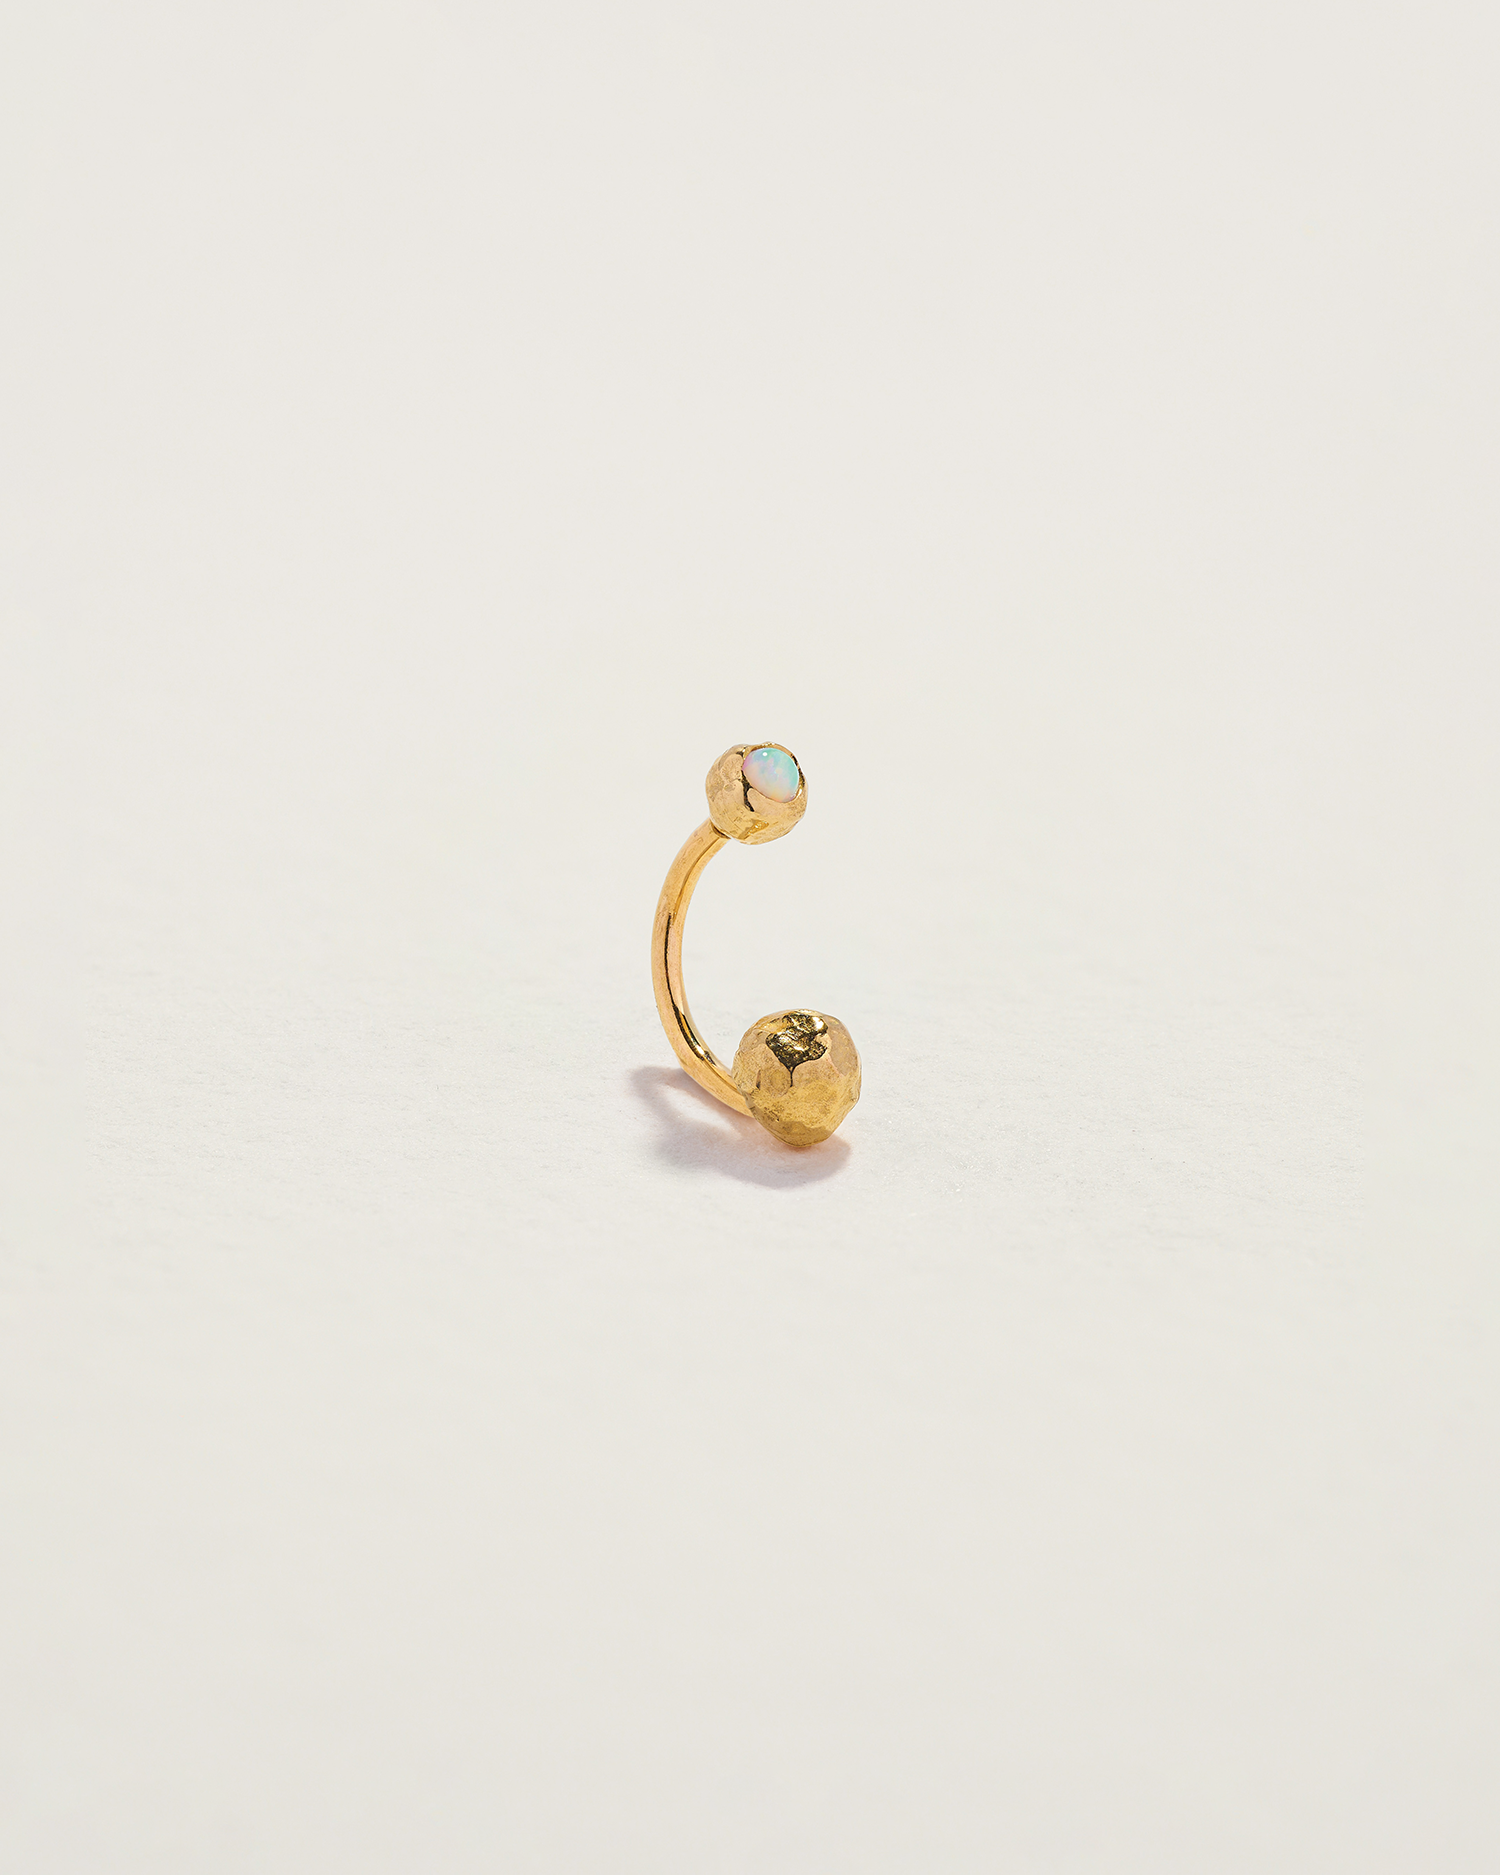 opal hook earring